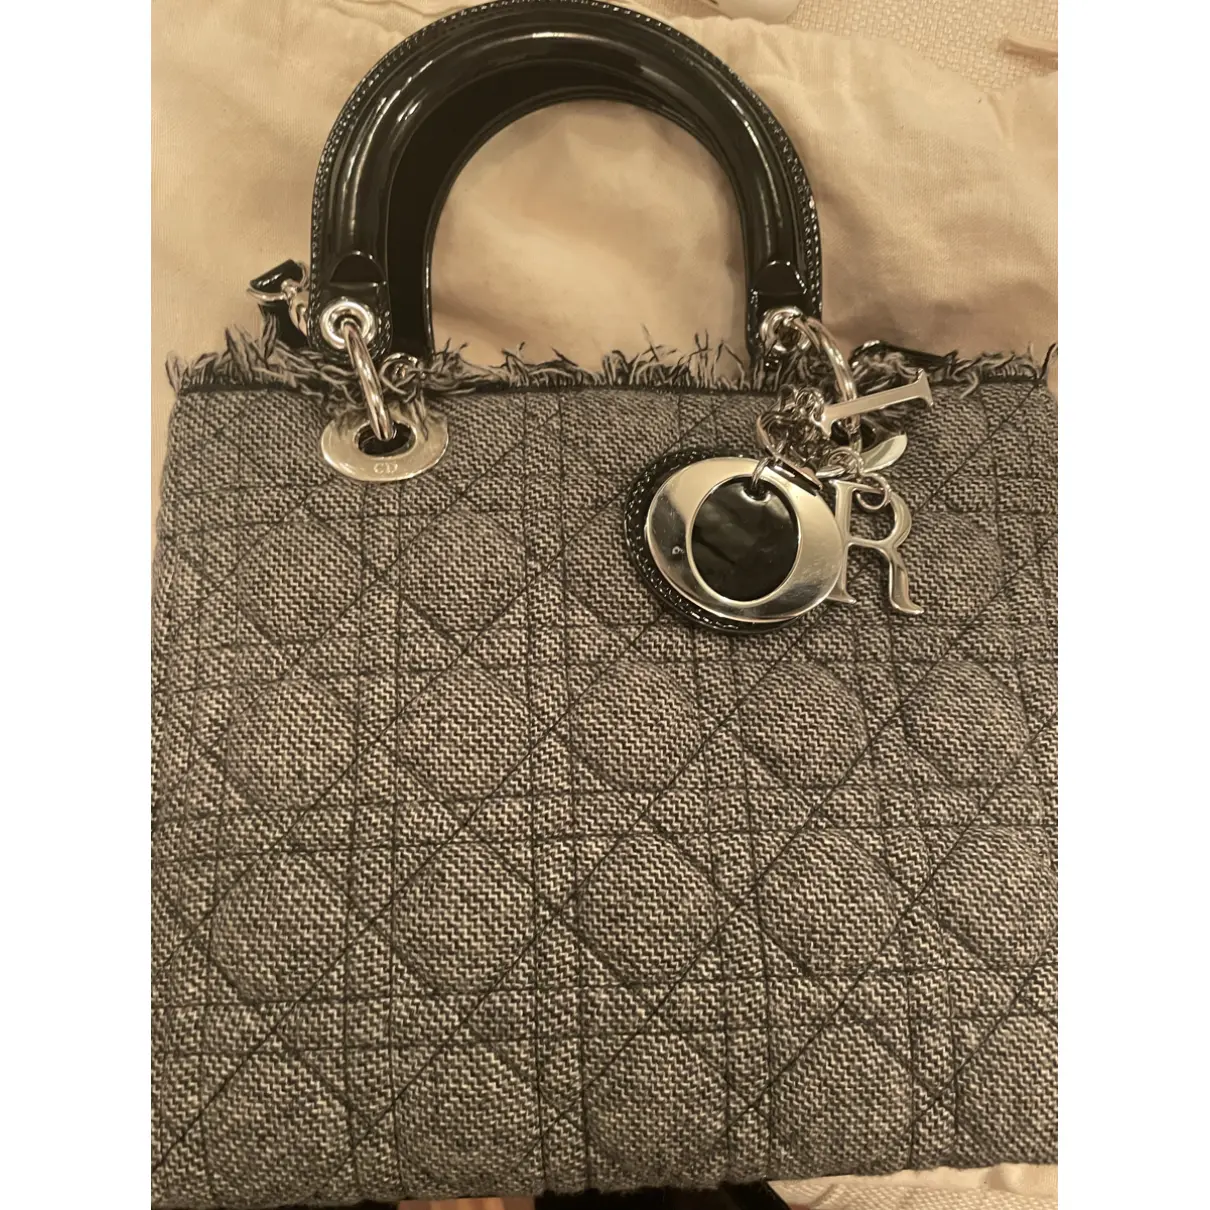 Lady Dior wool handbag Dior